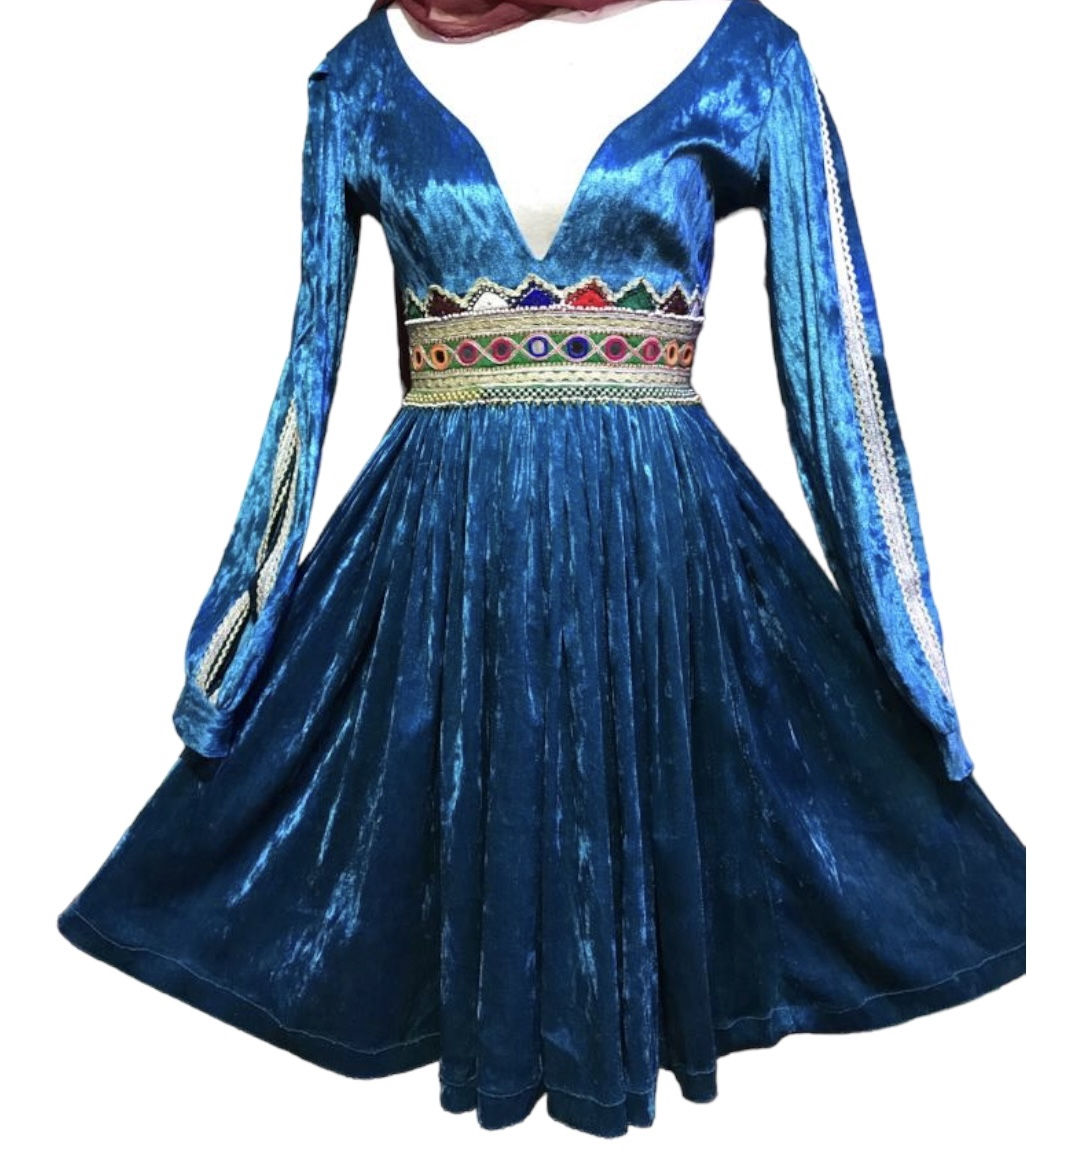 Lajward Prom Dress